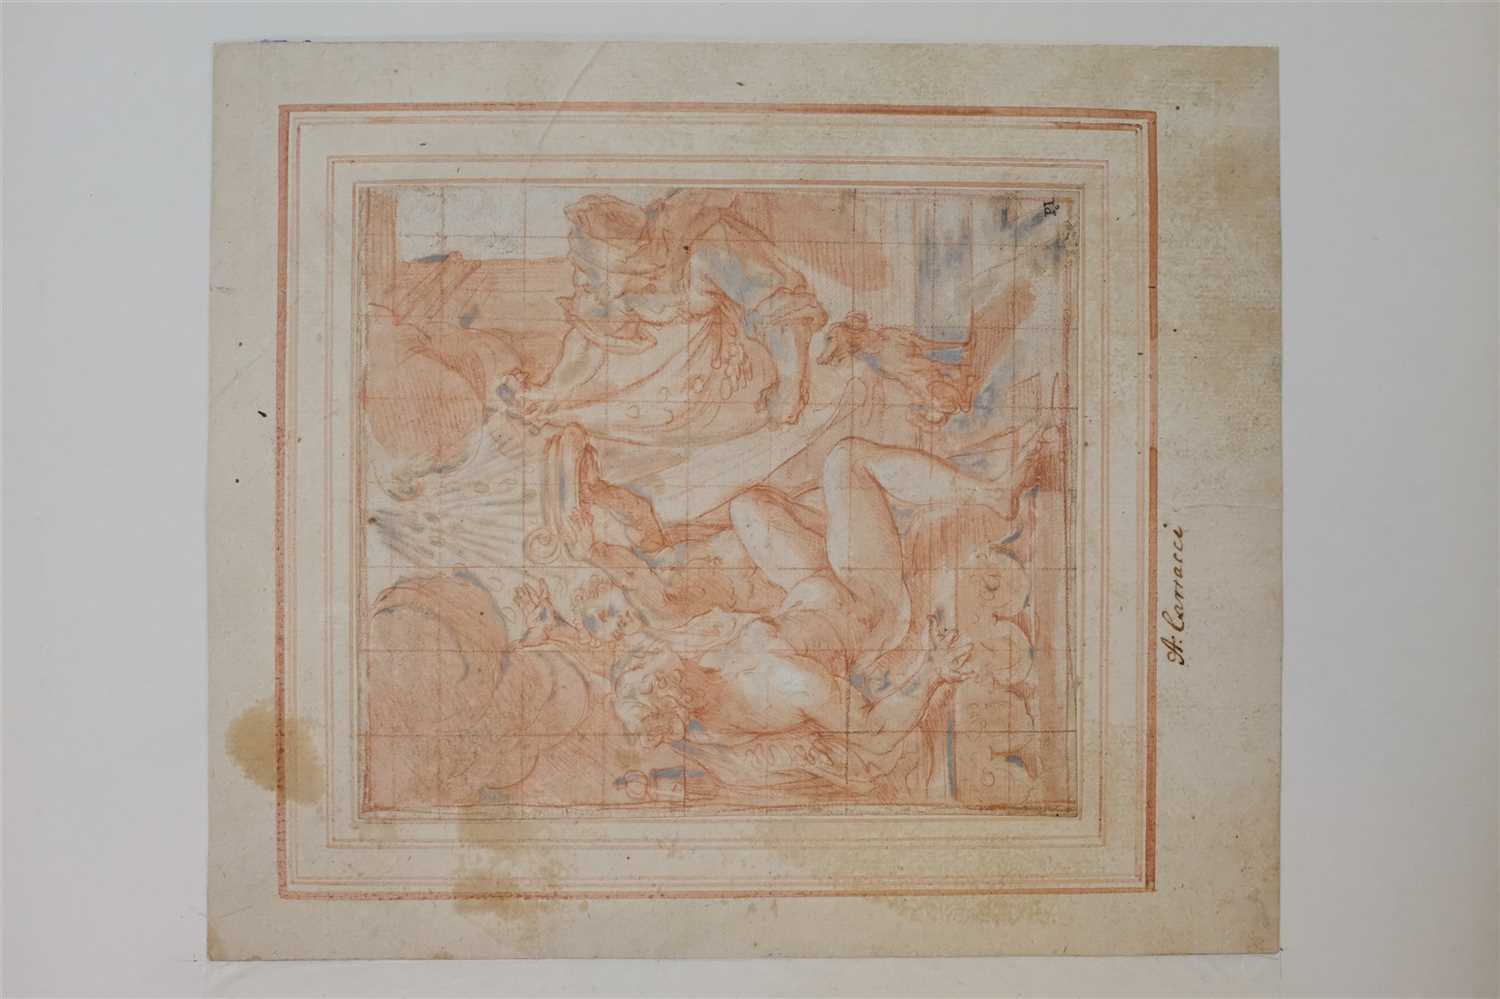 Lot 218 - Calvaert Denys, (circa 1540-1619), Danae circa 1590